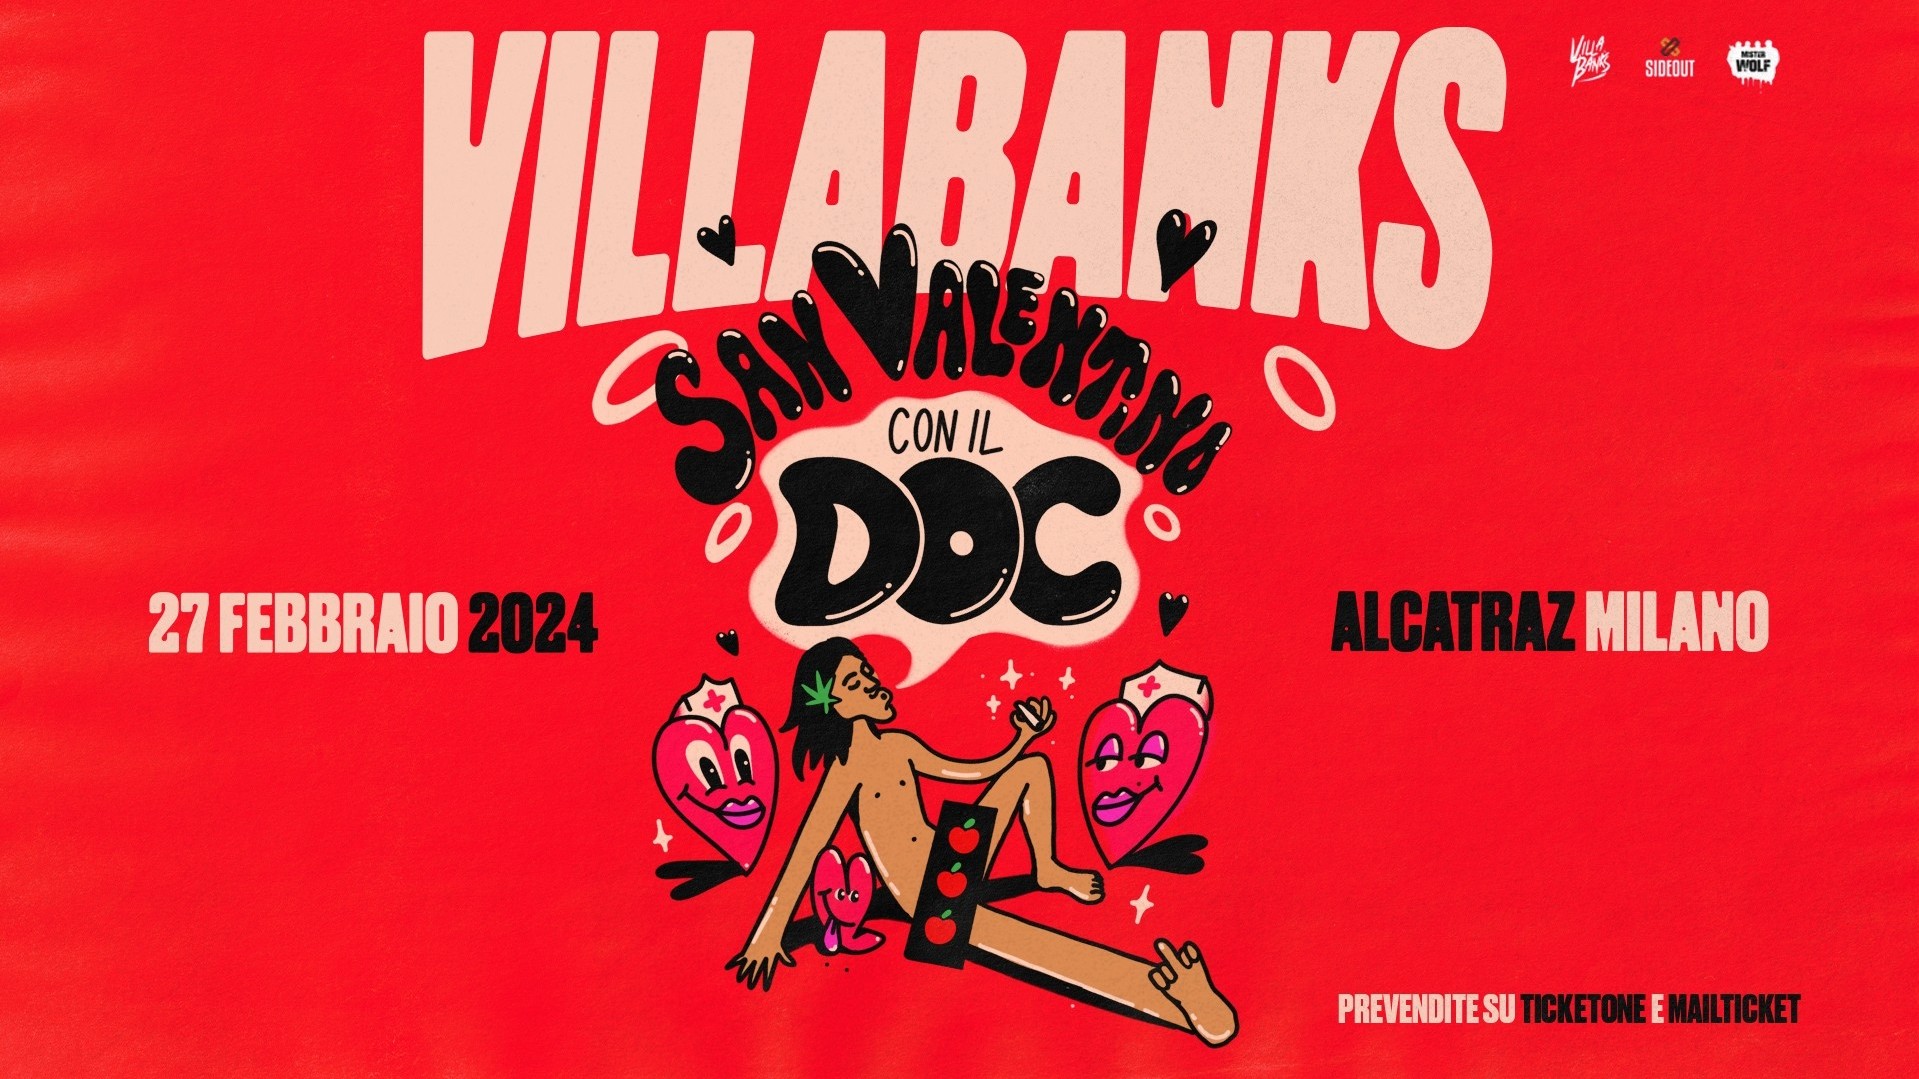 Villabanks "San Valentino con il Doc"